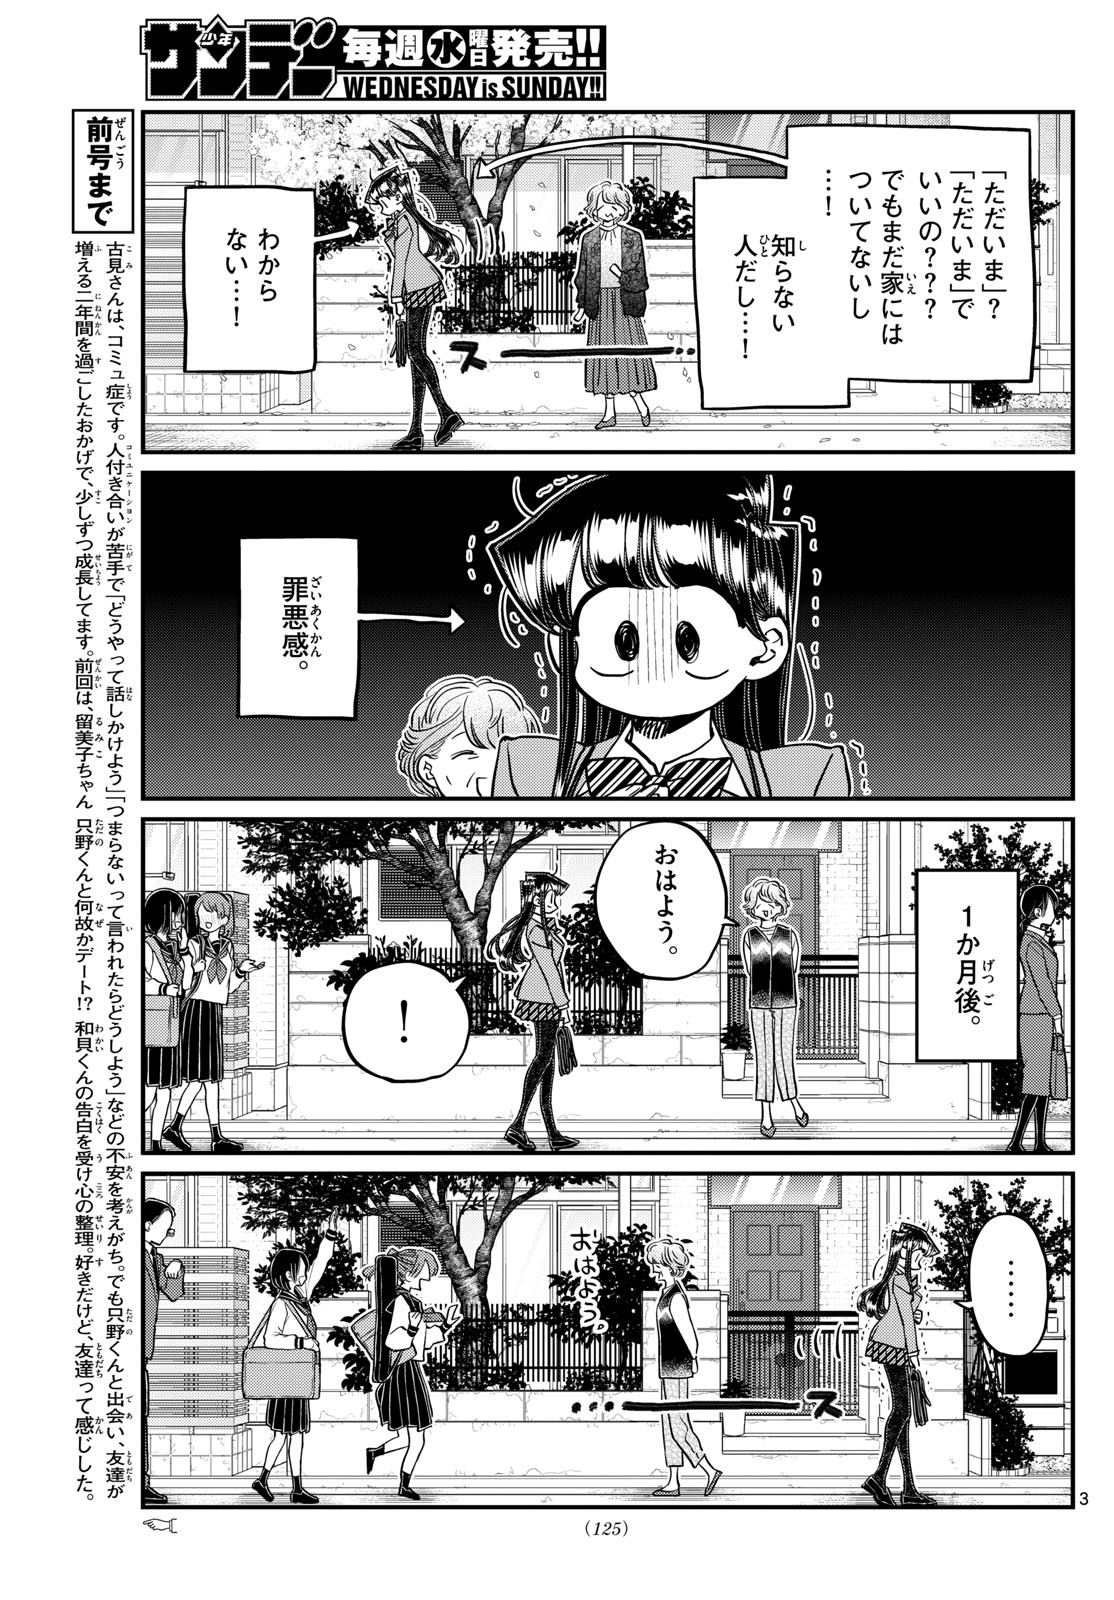 Komi-san wa Komyushou Desu - Chapter 434 - Page 3